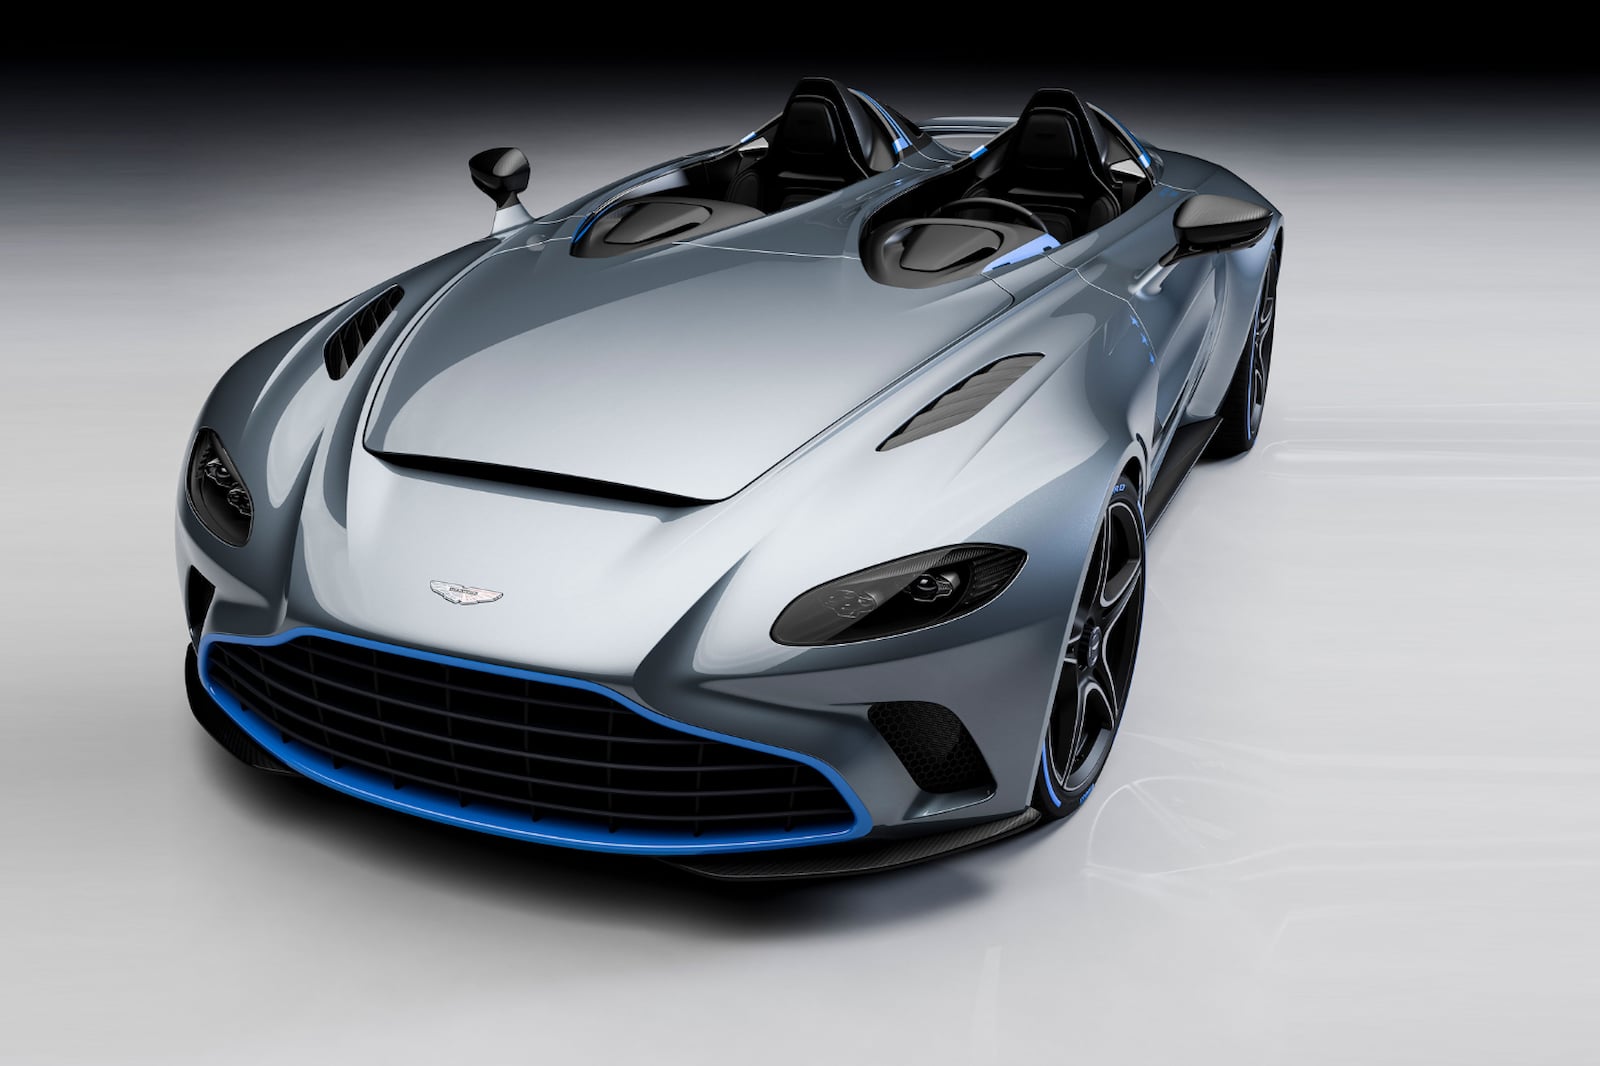 Хотите верьте, хотите нет, но есть люди, для которых Aston Martin Vantage Roadster за 150 000 долларов недостаточно особенный. Версия Vantage F1? Это немного более уникально, чем стандартный Aston, но все же недостаточно для клиентов, у которых есть 